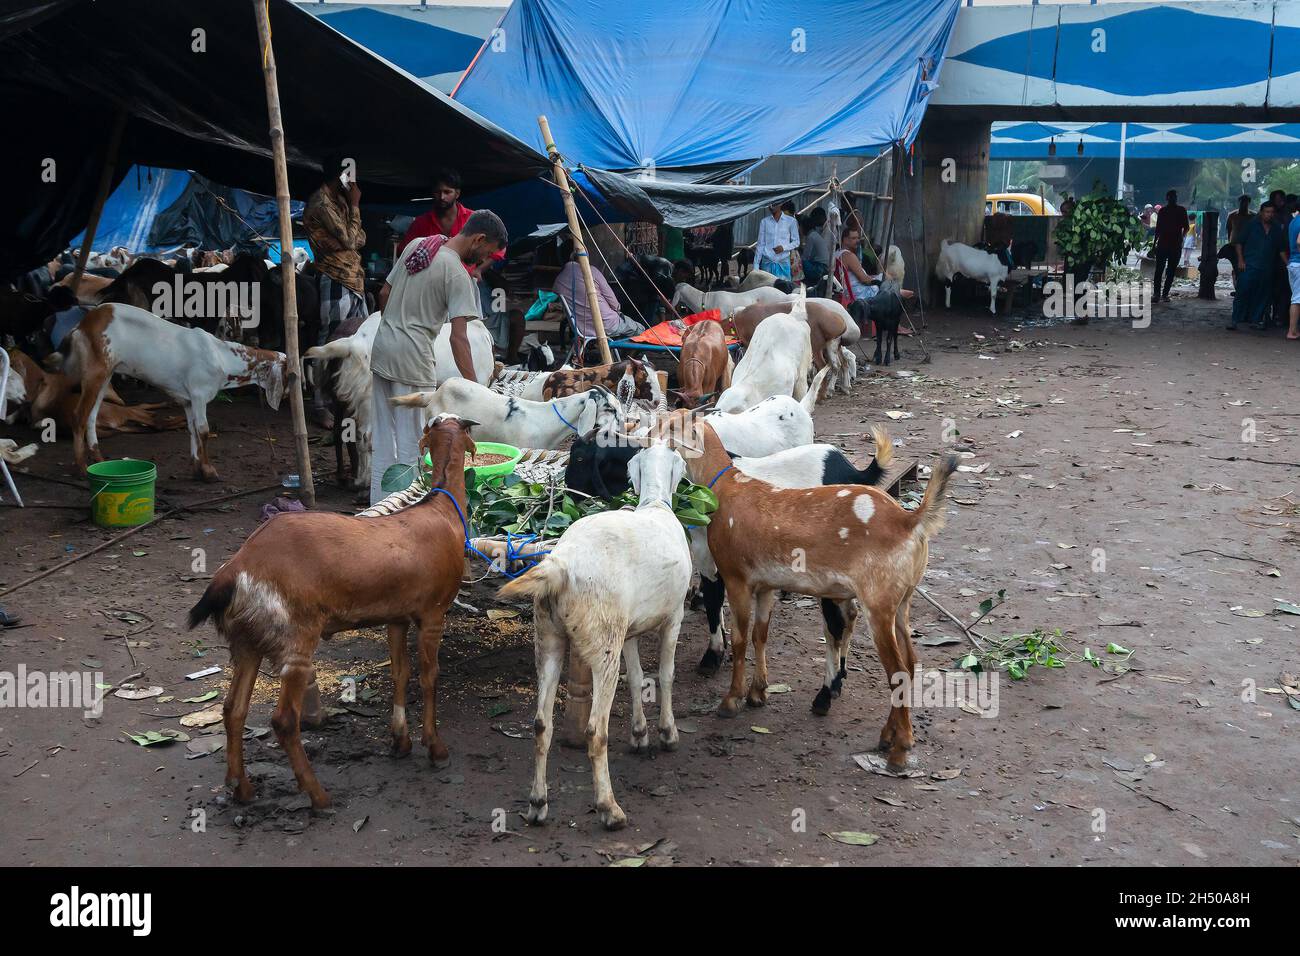 Kalkutta, Westbengalen, Indien - 11.. August 2019 : Ziegenverkäufer, der Ziegen füttert, die während der 'Eid al-Adha' oder Eid Qurban auf dem Markt verkauft werden. Stockfoto